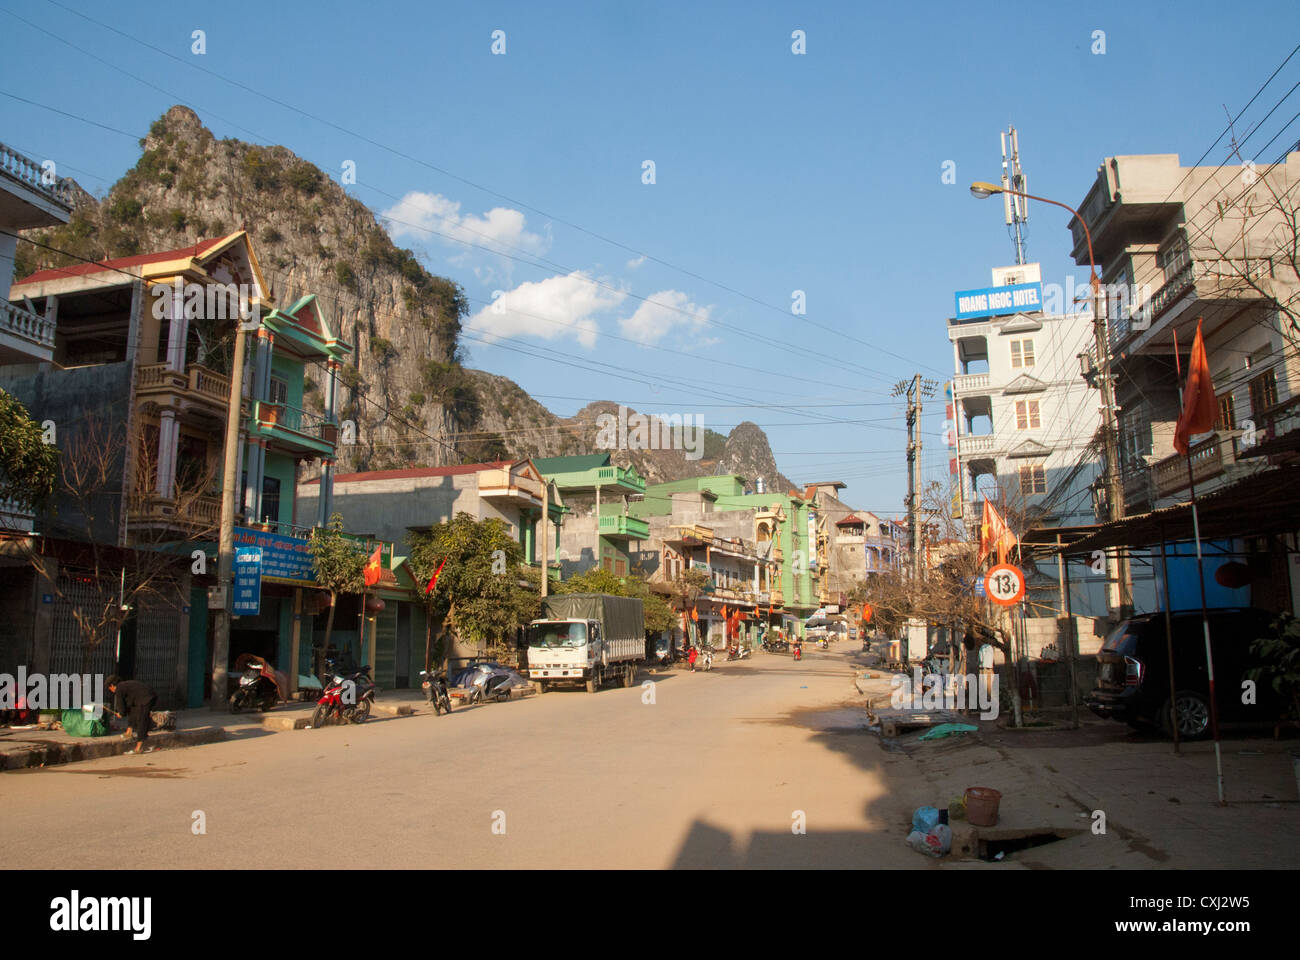 Kalksteinberge mit Blick auf Hauptstraße, Dong Van Ha Giang, Vietnam Stockfoto